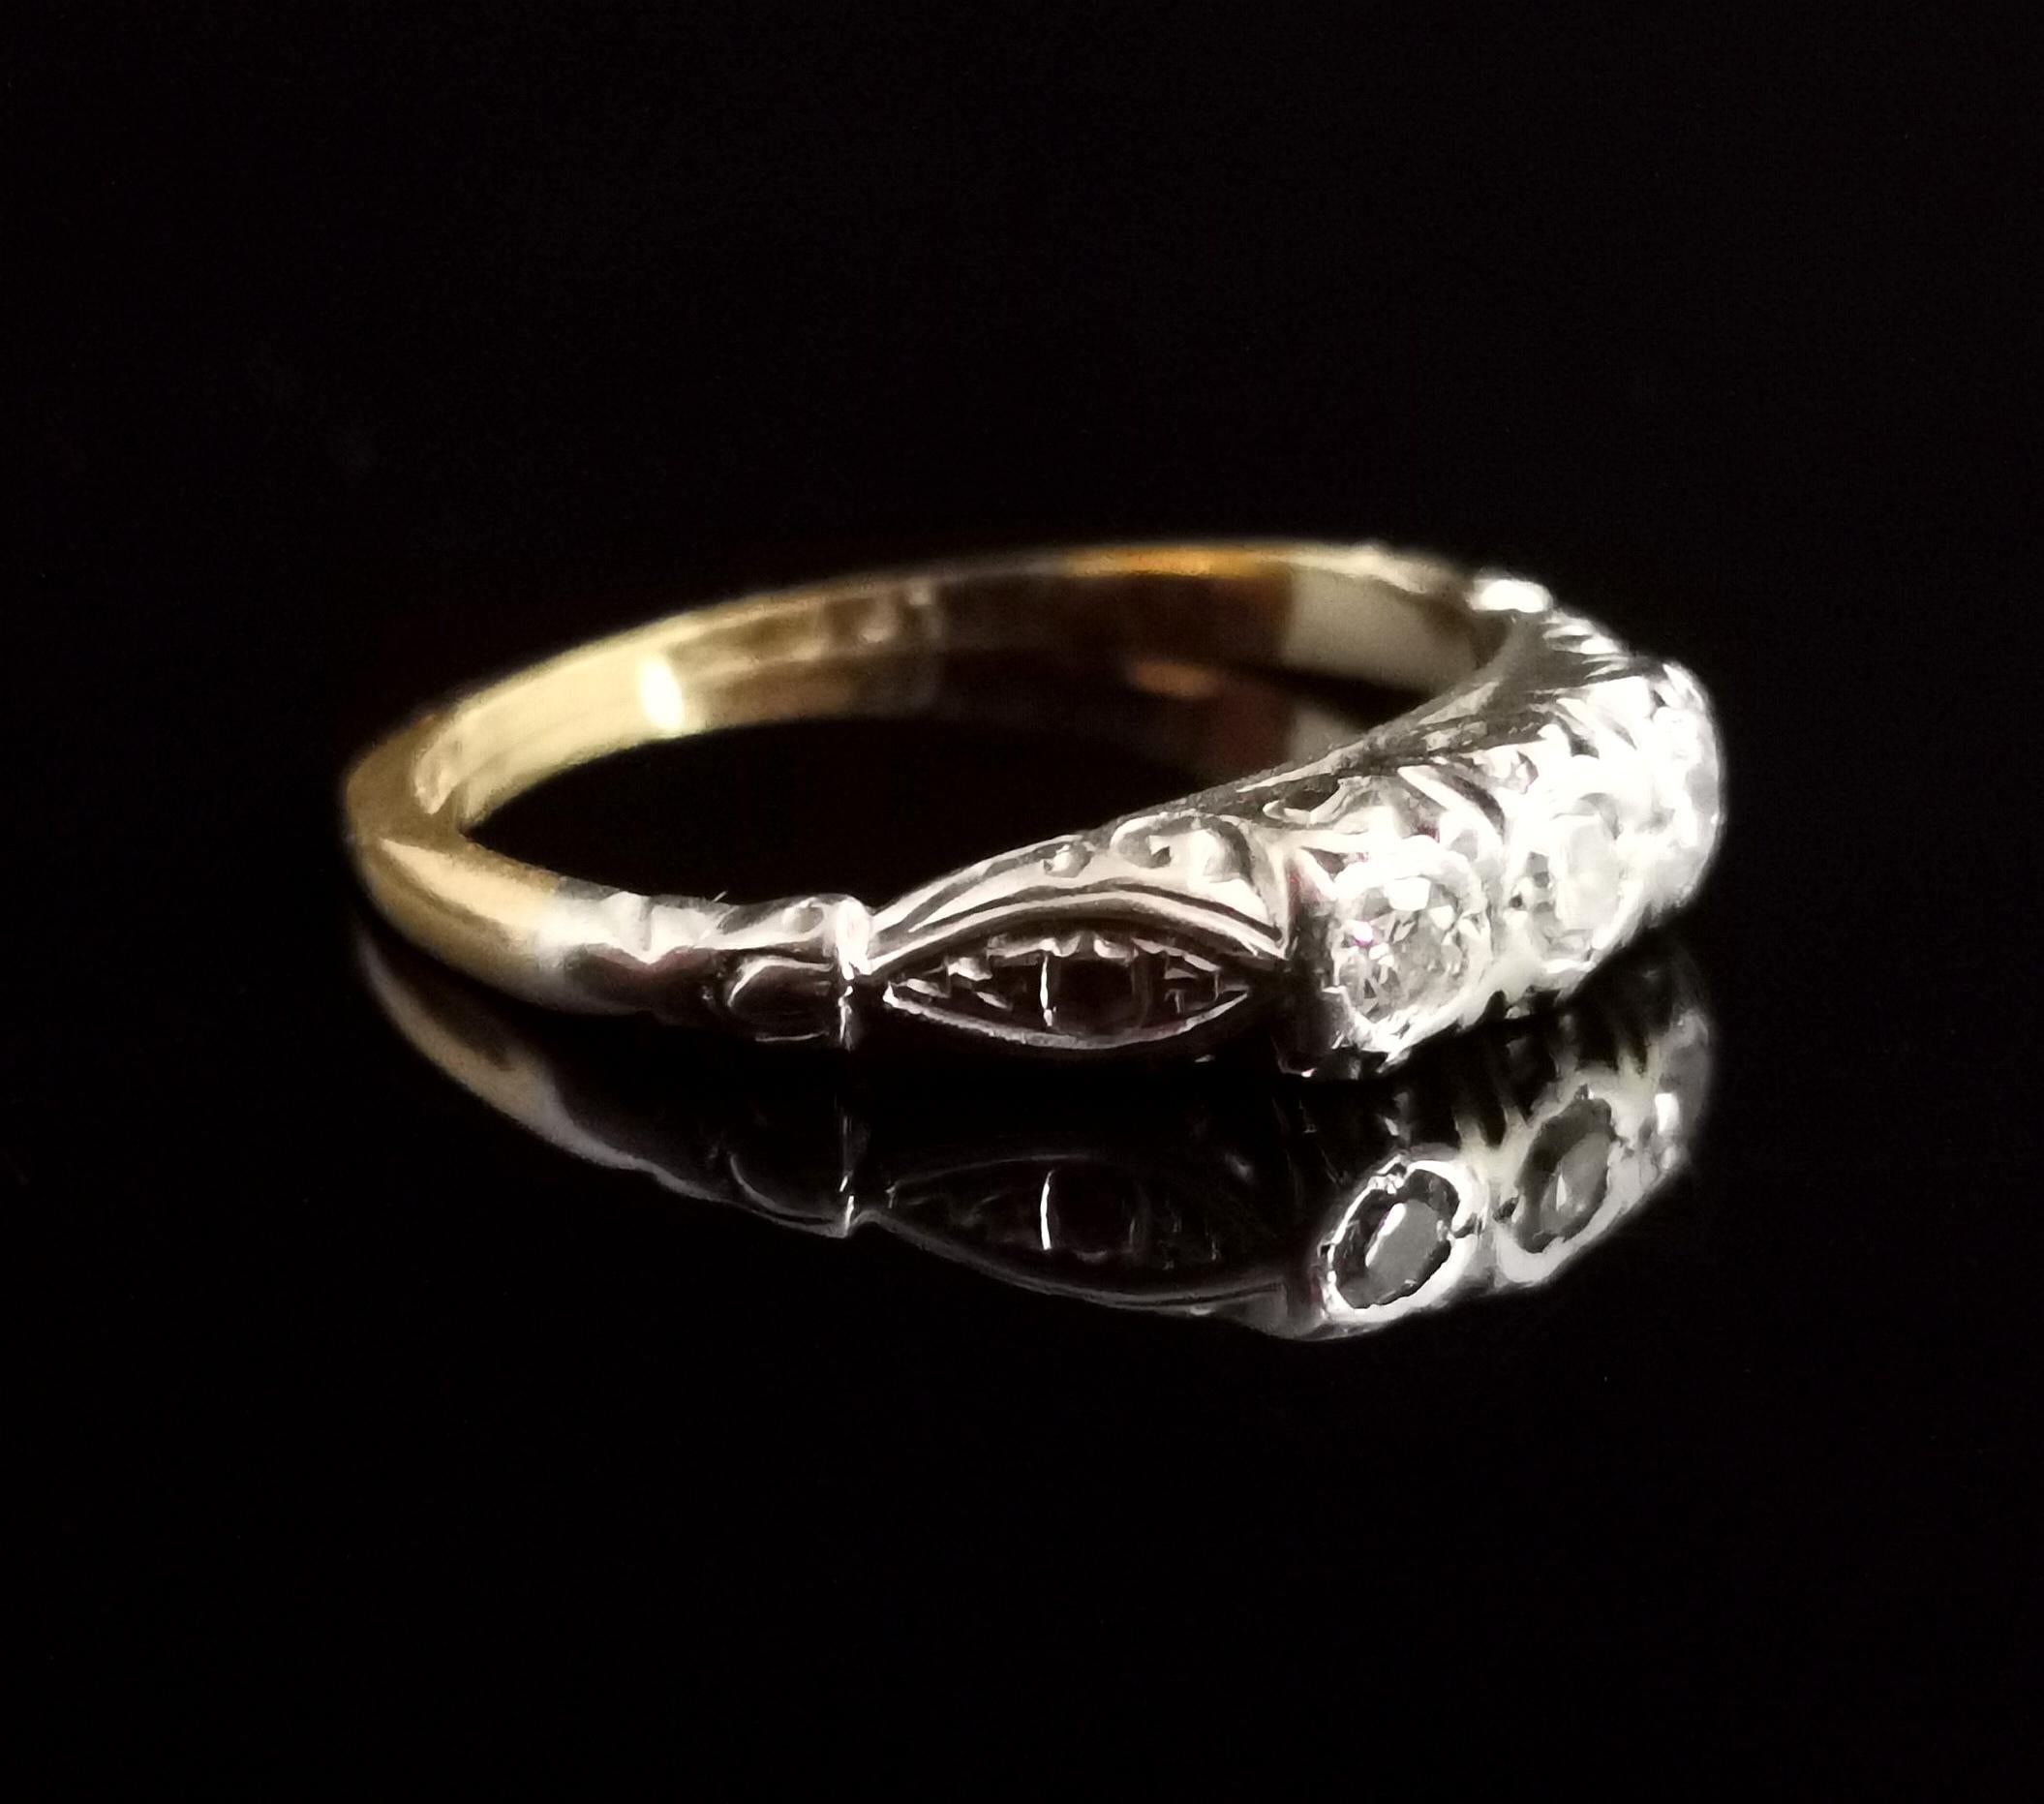 Women's Art Deco Three Stone Diamond Ring, 18 Karat Yellow Gold and Platinum 